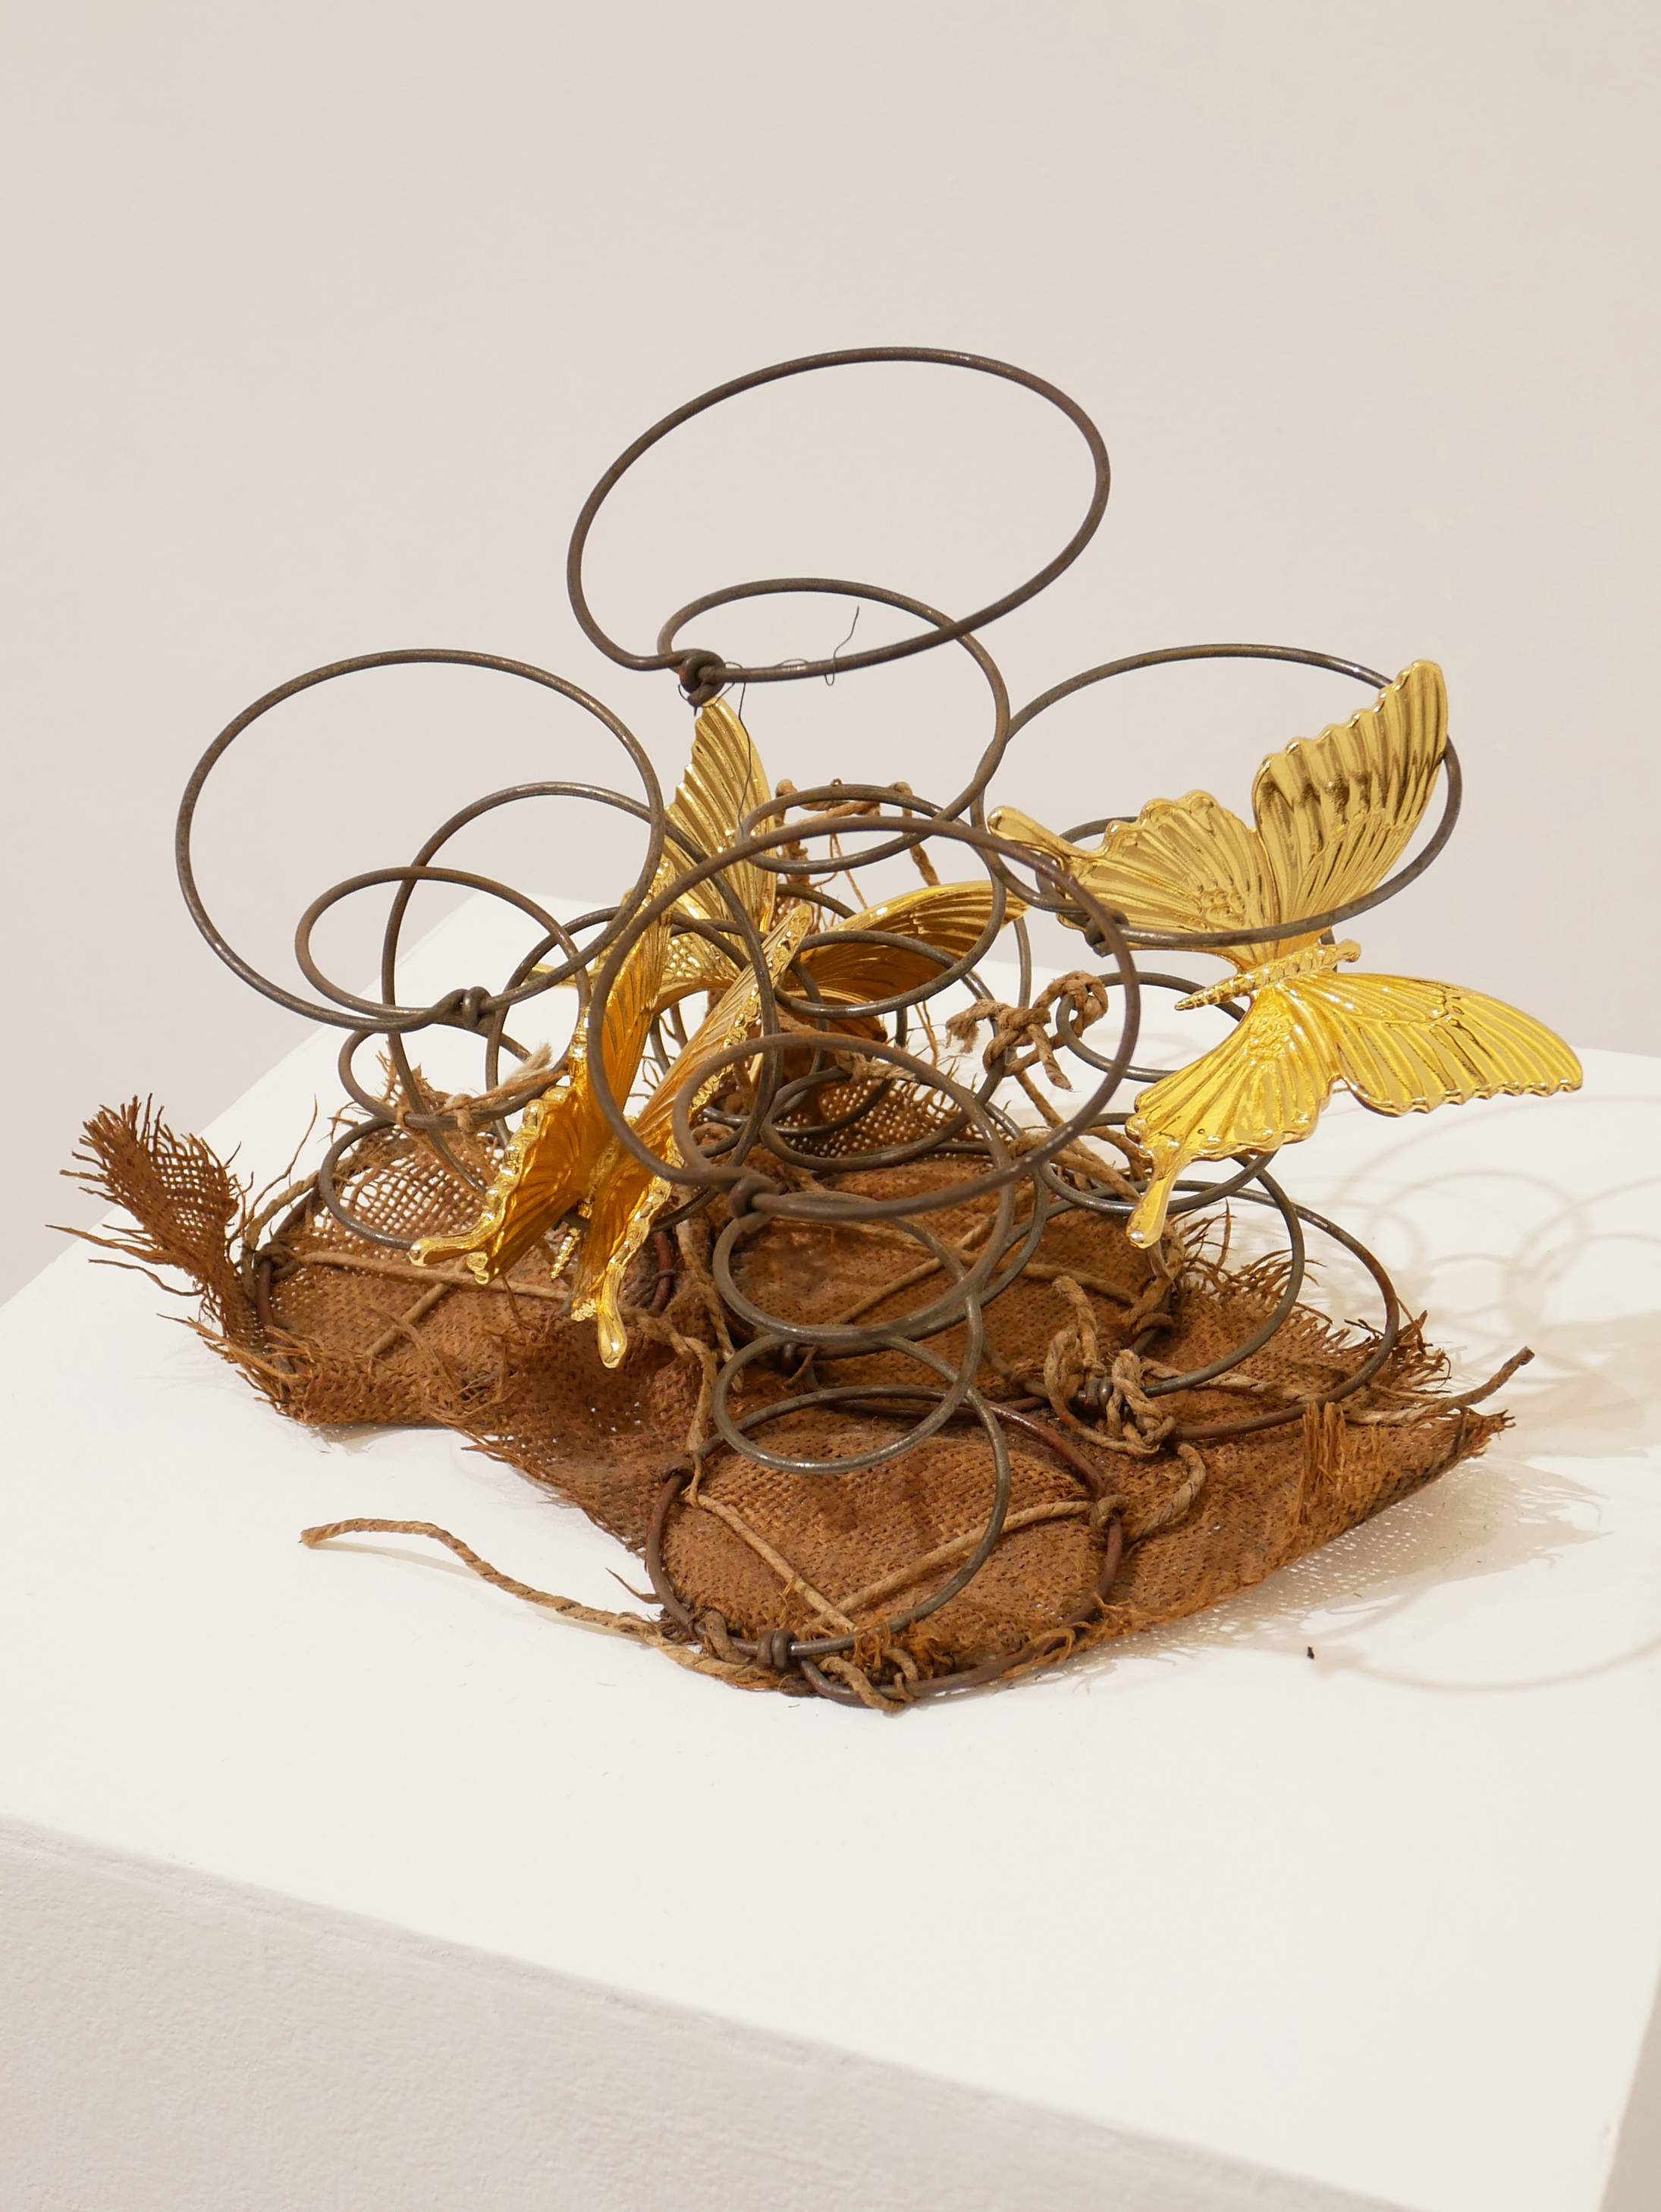 2020, metal, jute, string, gold plated, brass butterflies, 25 × 37 × 34 cm